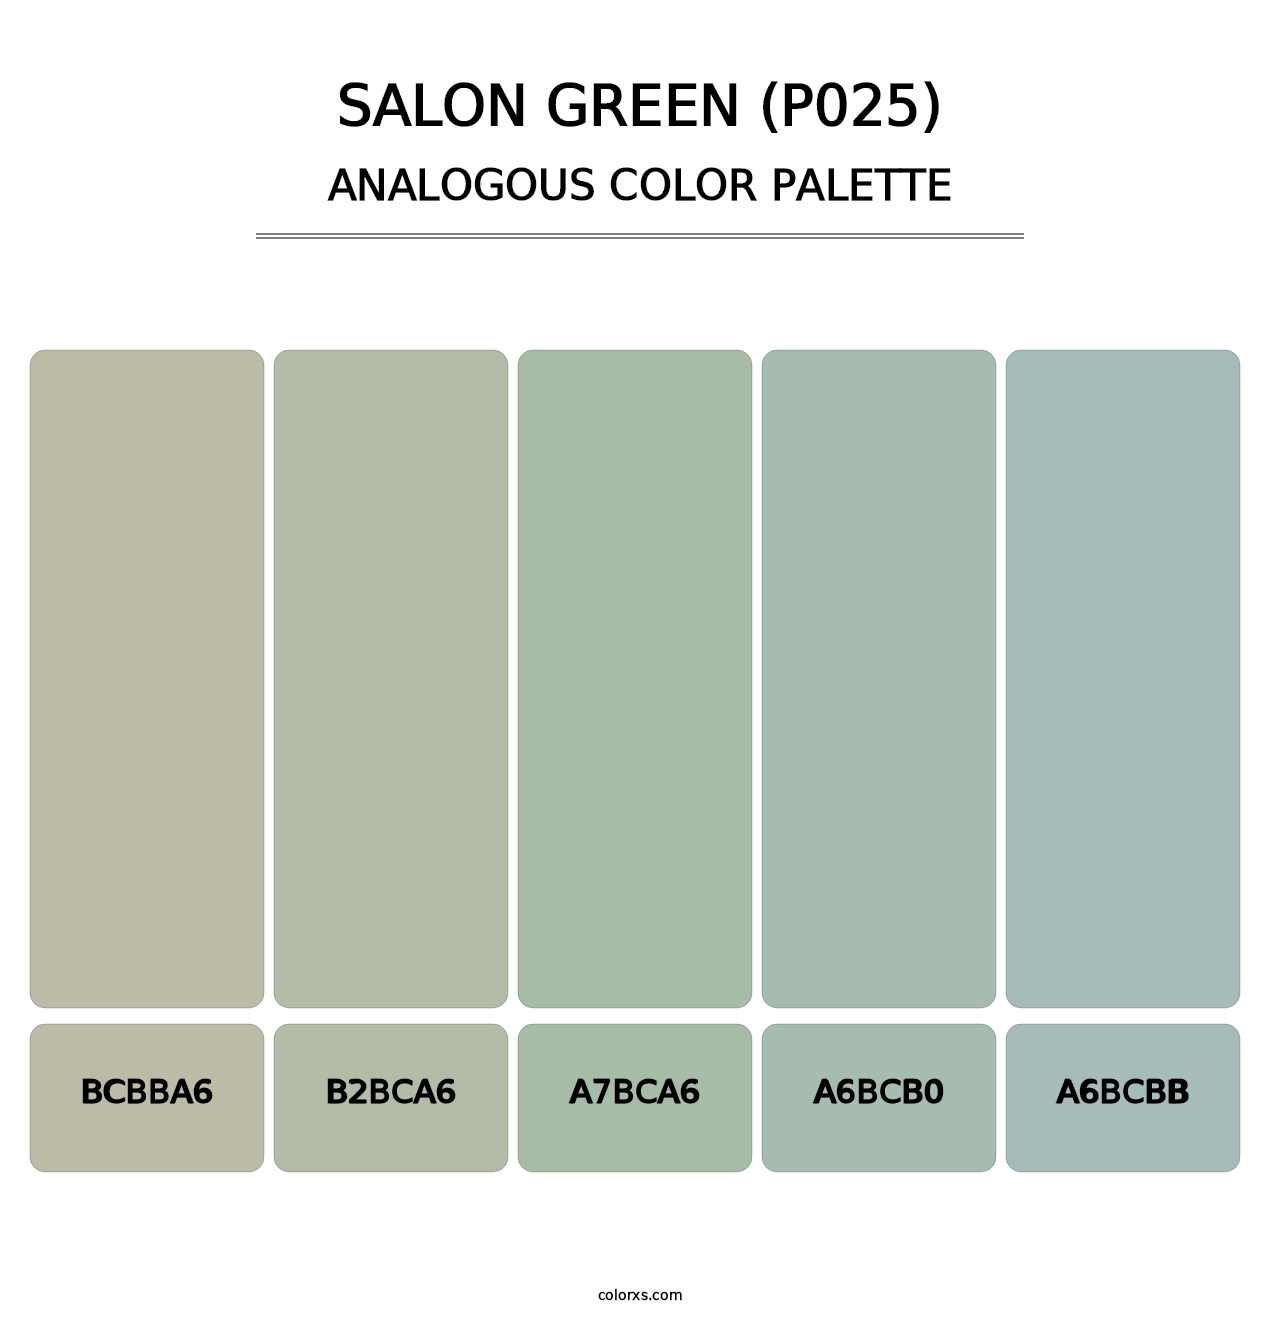 Salon Green (P025) - Analogous Color Palette